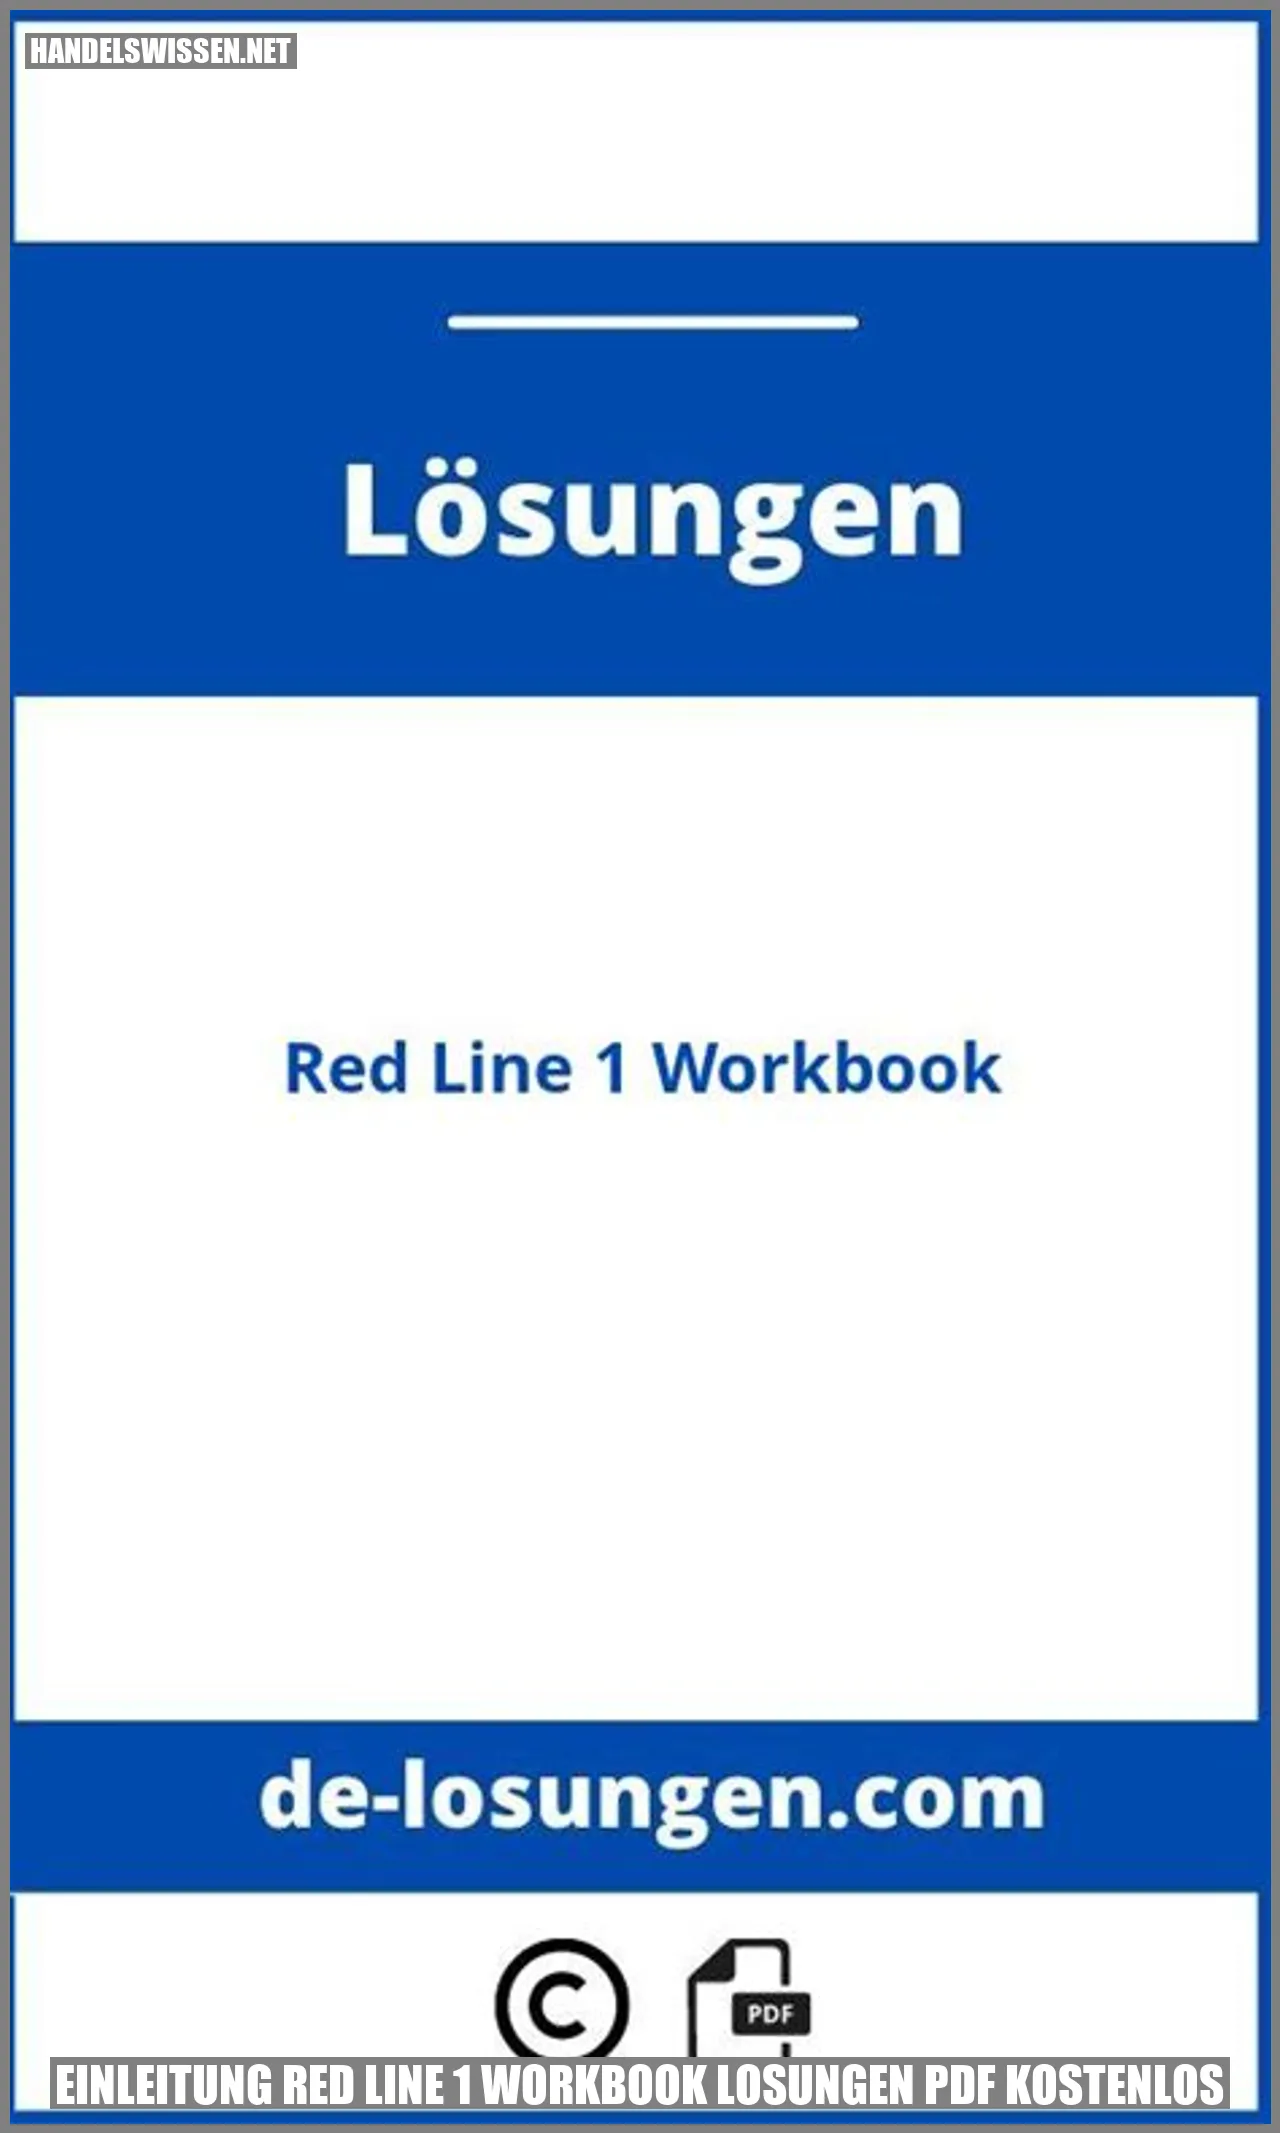 Einleitung Red Line 1 Workbook Lösungen PDF kostenlos